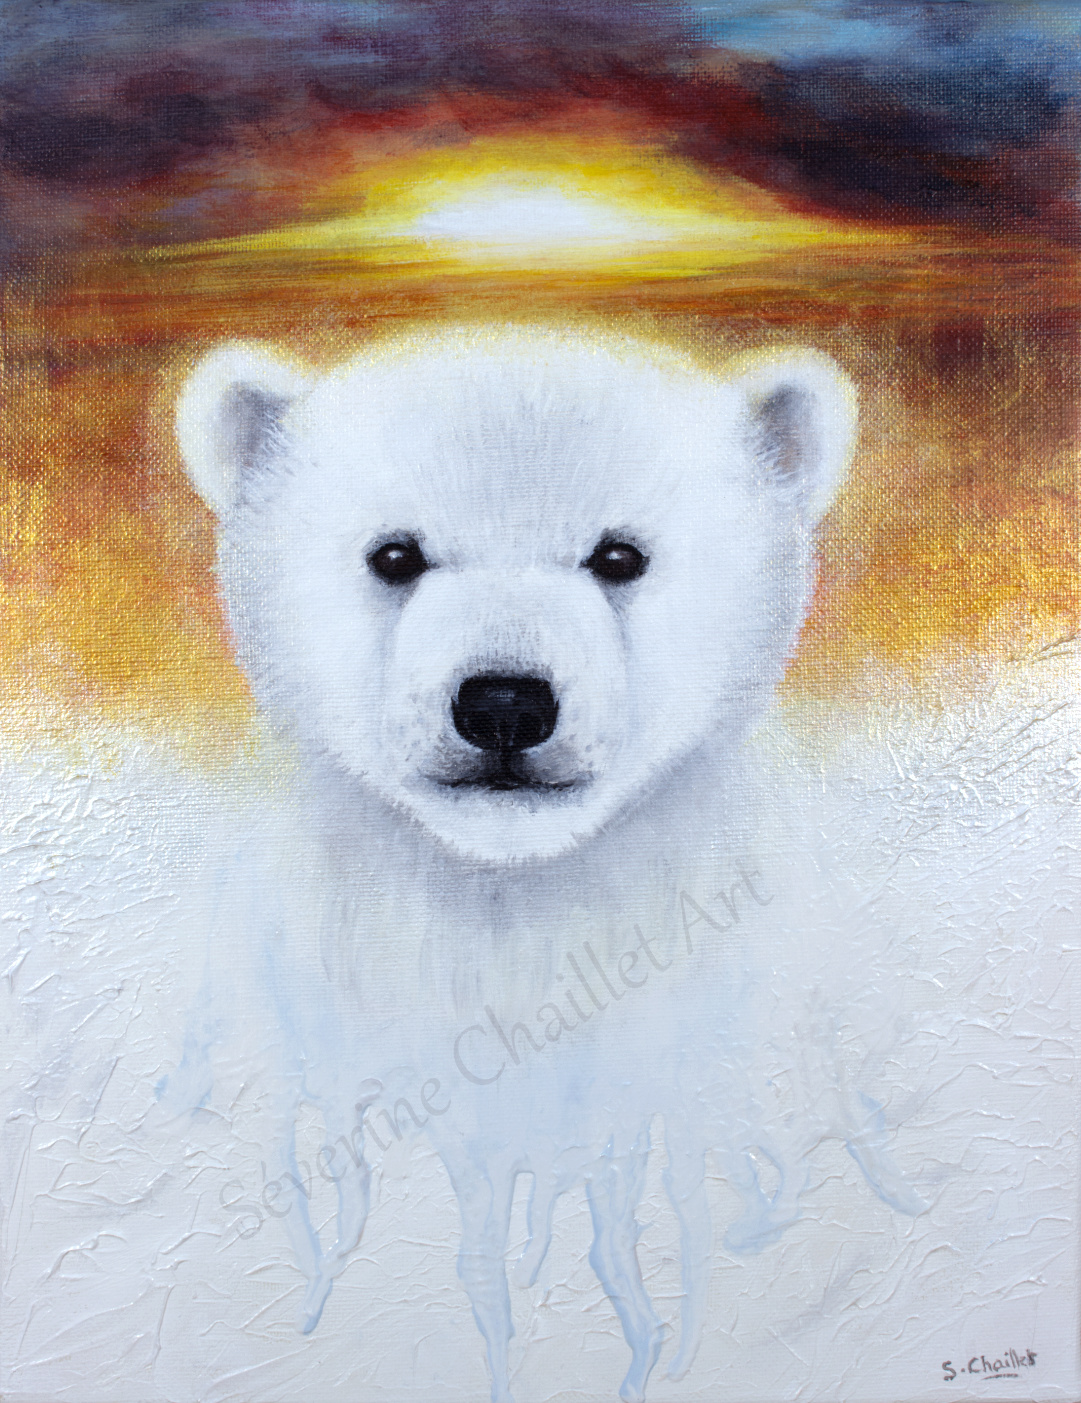 Portrait d'un ourson polaire victime du réchauffement climatique